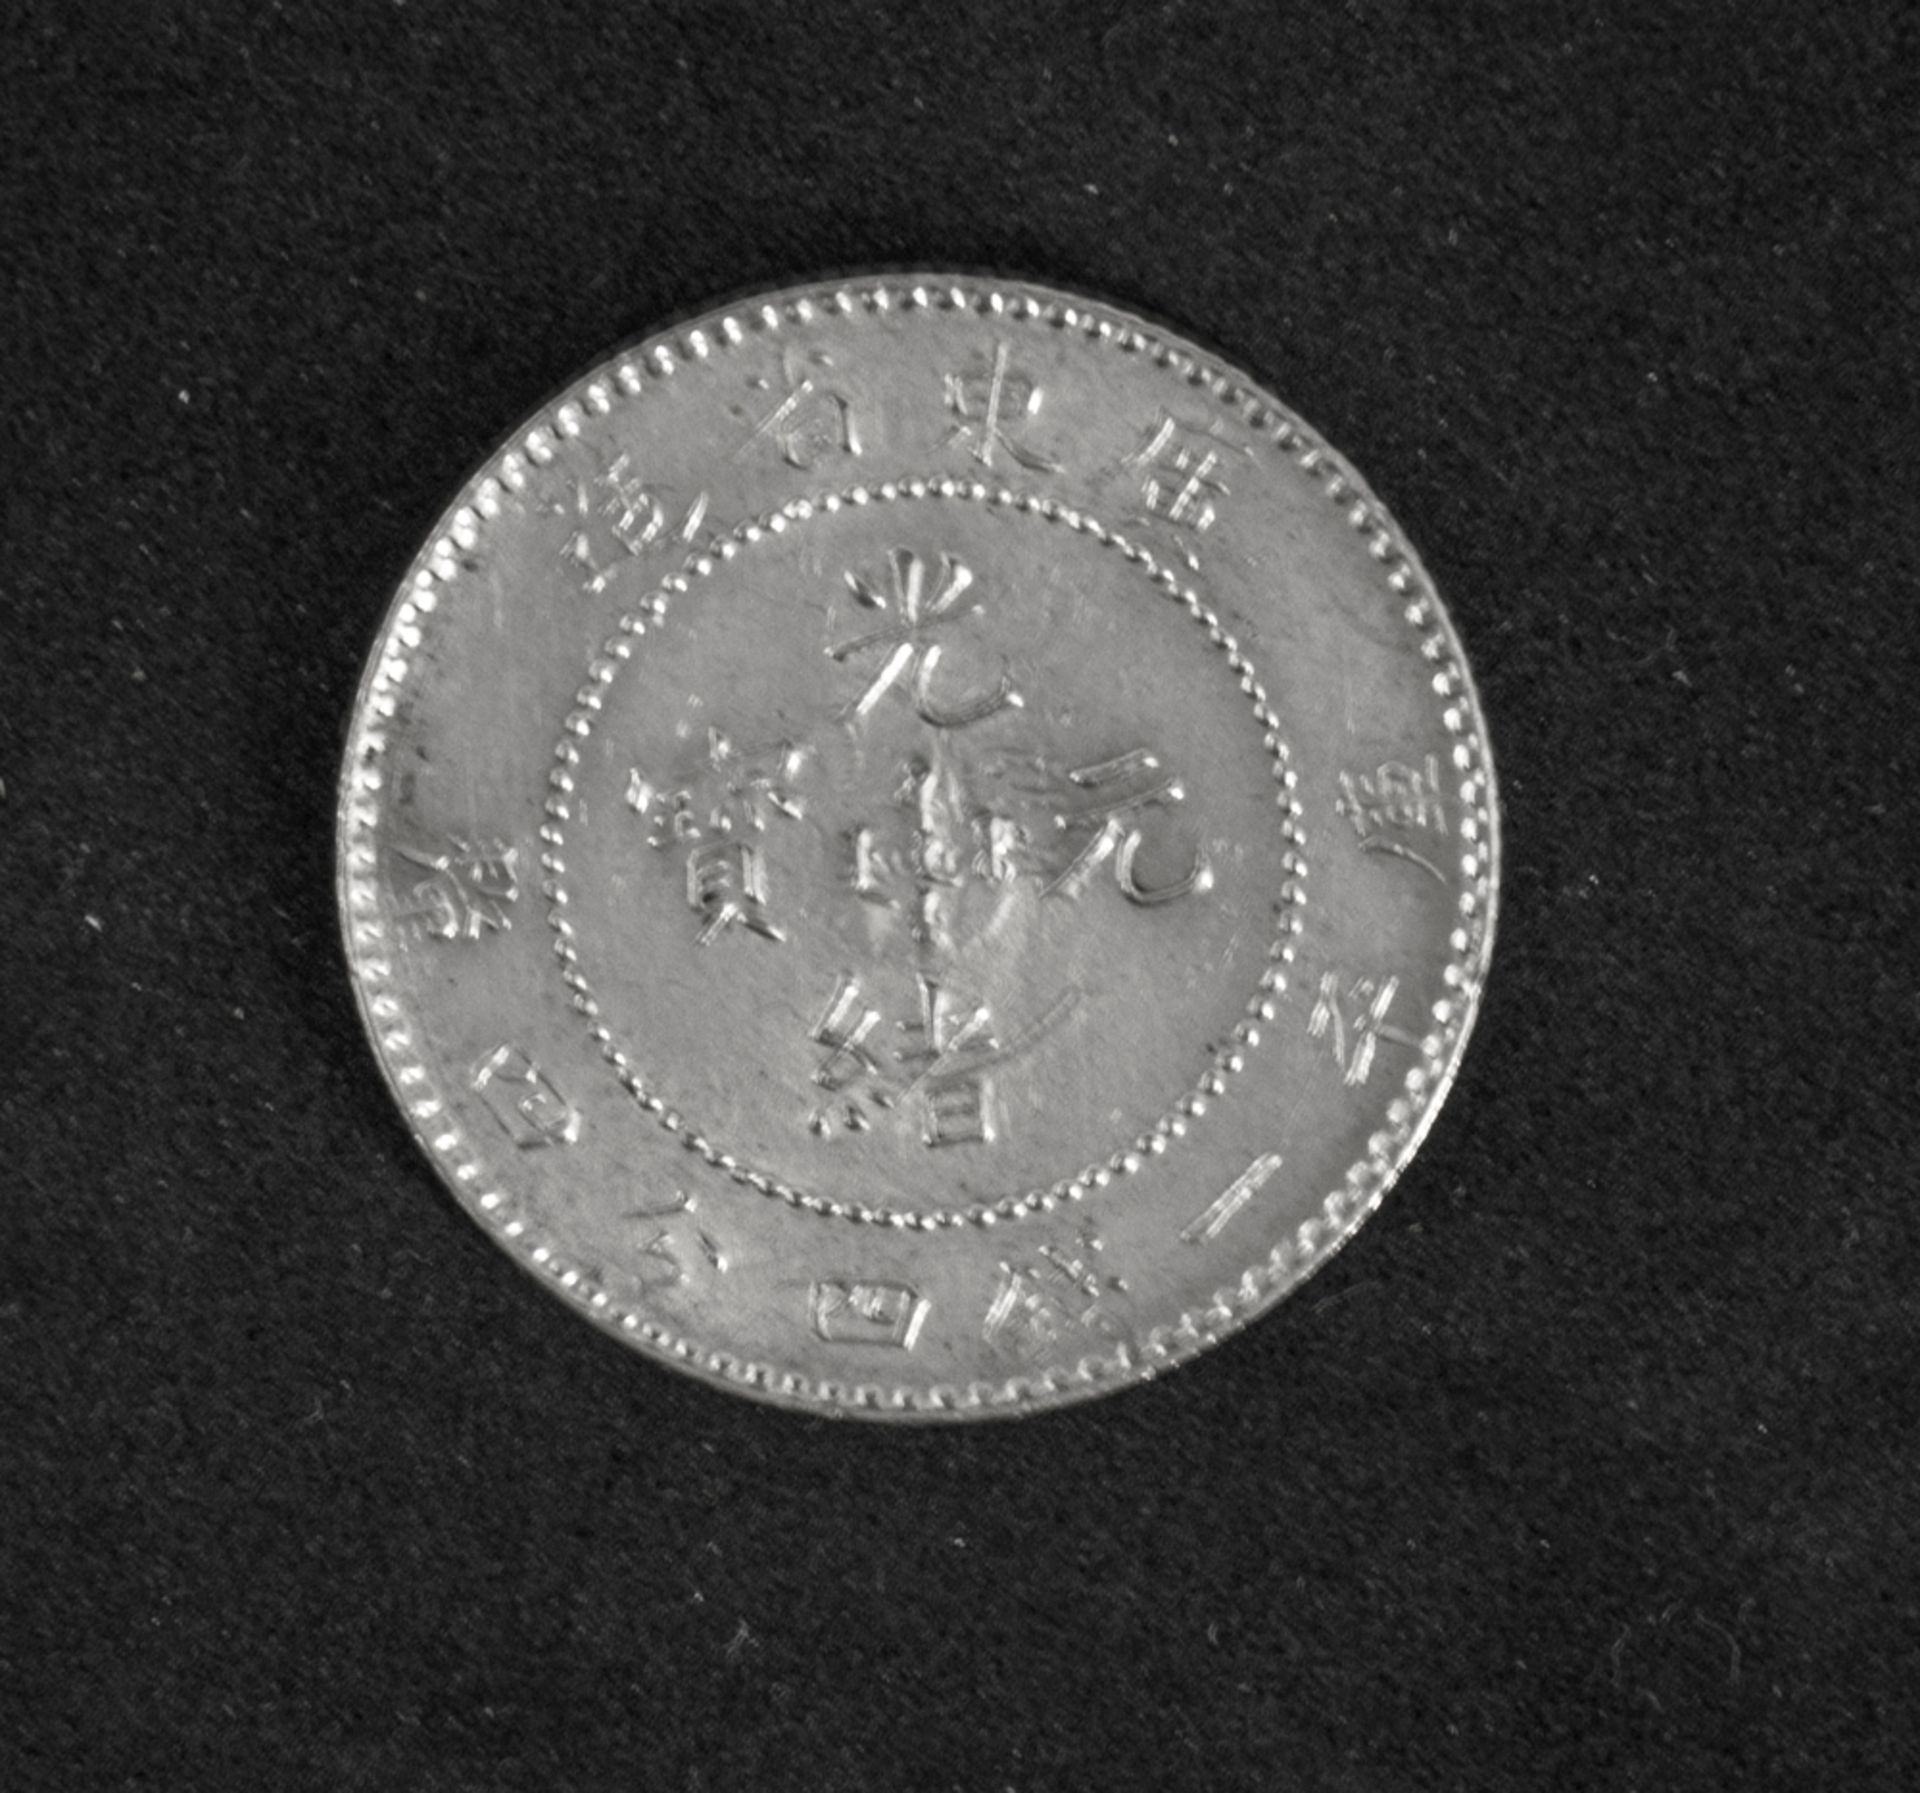 China Kwangtung 1908, 20 Cents - Silbermünze. Gewicht: ca. 5,4 g, Durchmesser ca. 24 mm. - Bild 2 aus 2